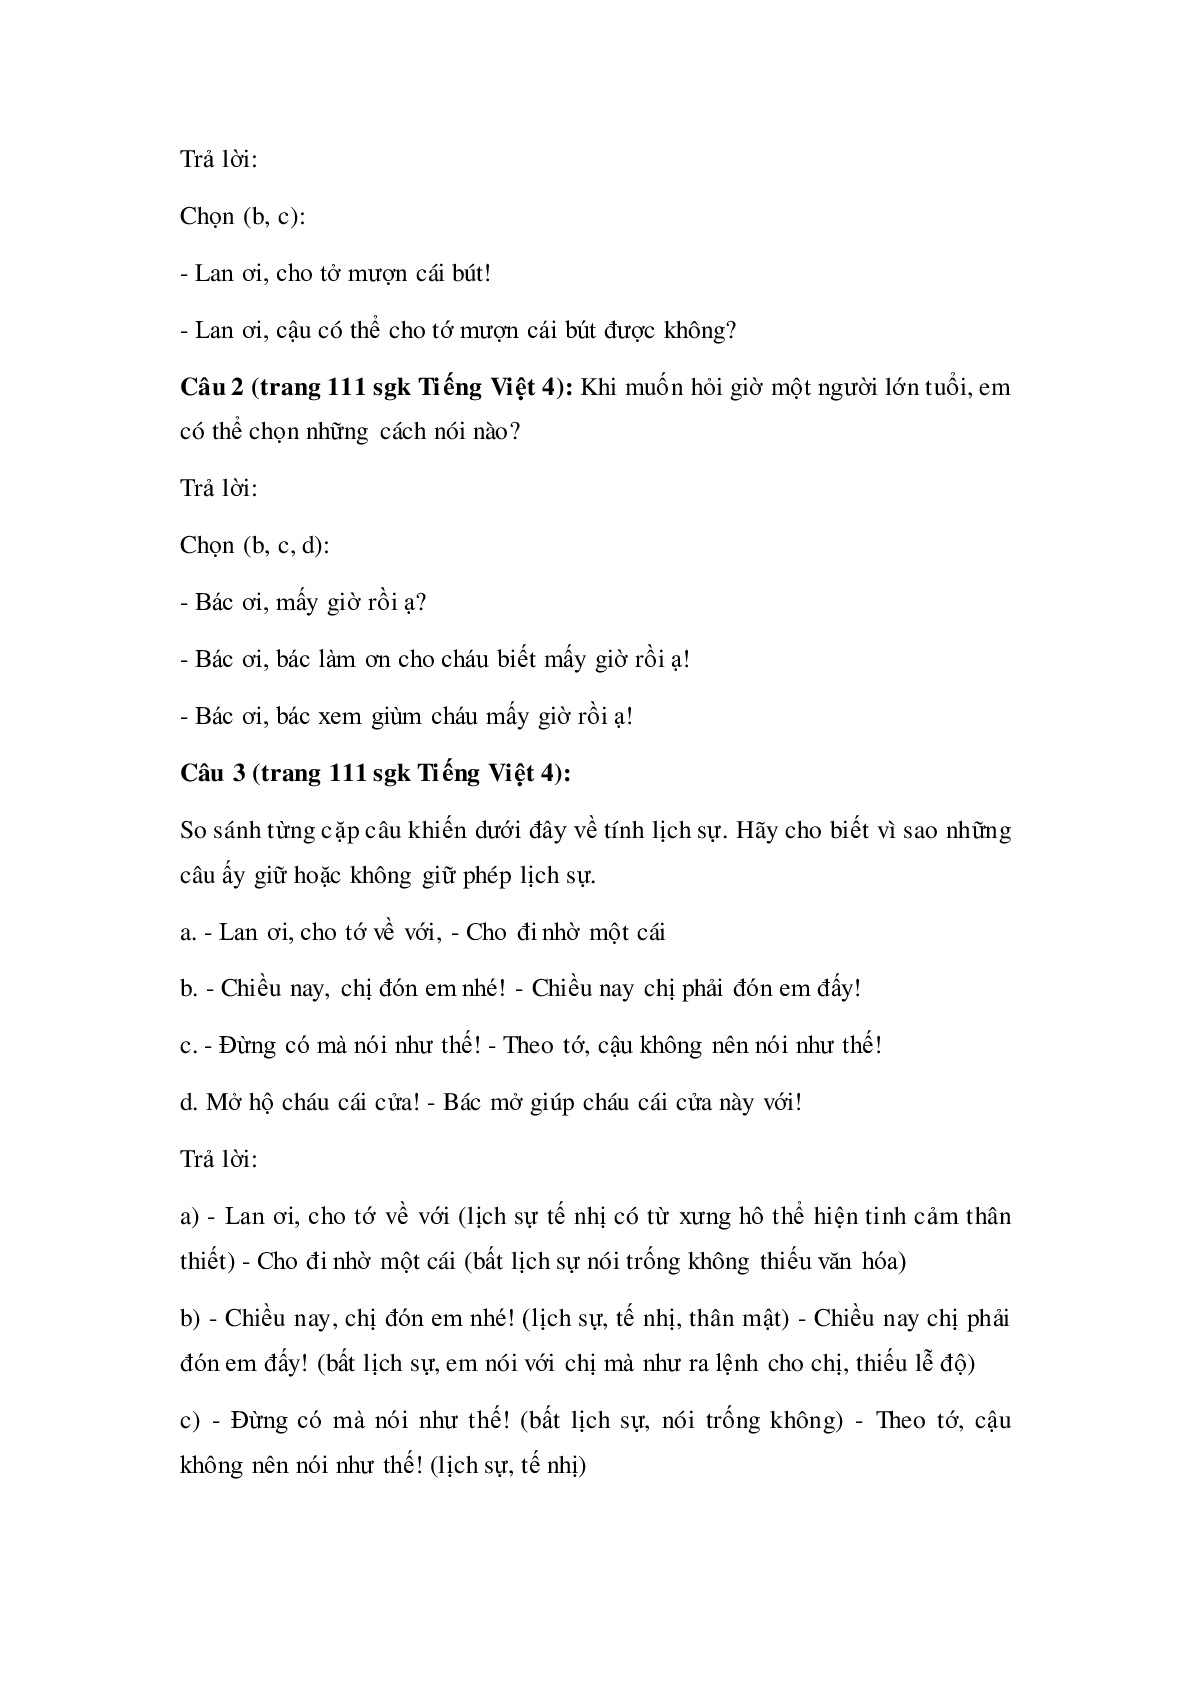 Soạn Tiếng Việt lớp 4: Luyện từ và câu: Giữ phép lịch sự khi bày tỏ yêu cầu đề nghị mới nhất (trang 2)